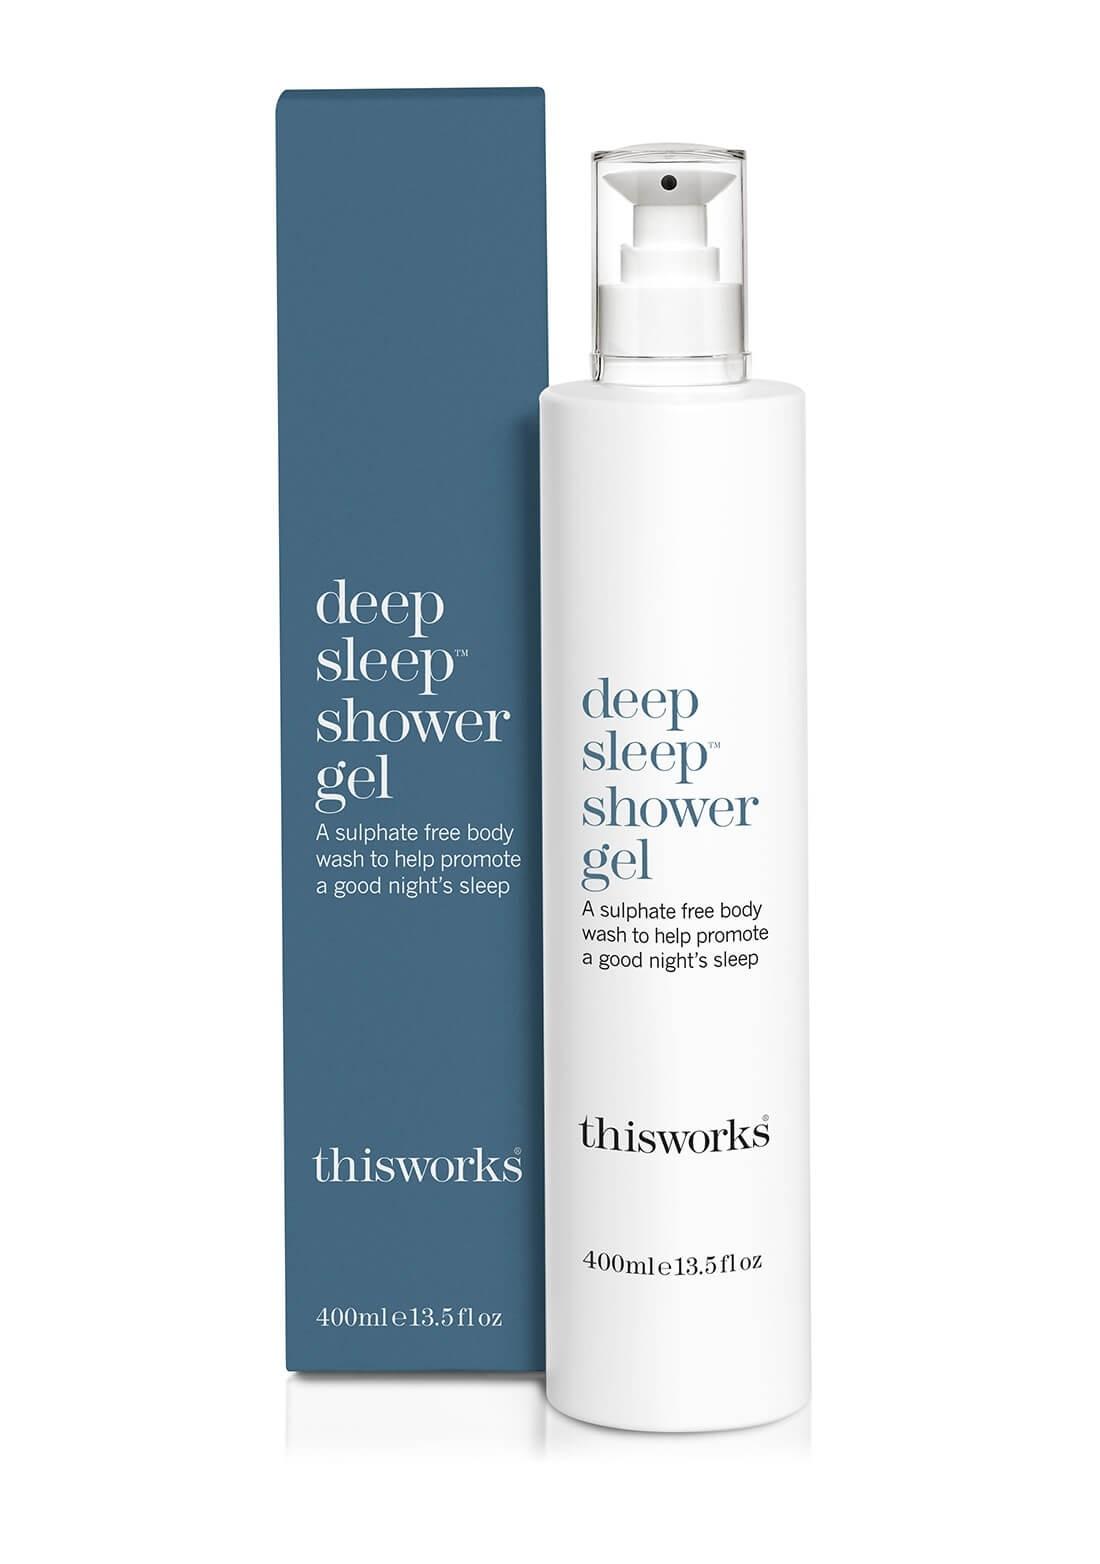 เจลอาบน้ำ THIS WORKS Deep Sleep Shower Gel (Limited Edition) 250 ml. จำนวนจำกัด เจลอาบน้ำที่ช่วยผ่อนคลายร่างกายและจิตใจ ช่วยให้คุณนอนหลับสนิทตลอดคืน จากคุณค่าจากธรรมชาติ ช่วยปลอบประโลมจิตใจให้รู้สึกสงบ พร้อมบำรุงผิวให้เนียนนุ่มชุ่มชื่นอย่างยาวนาน / ของแท้